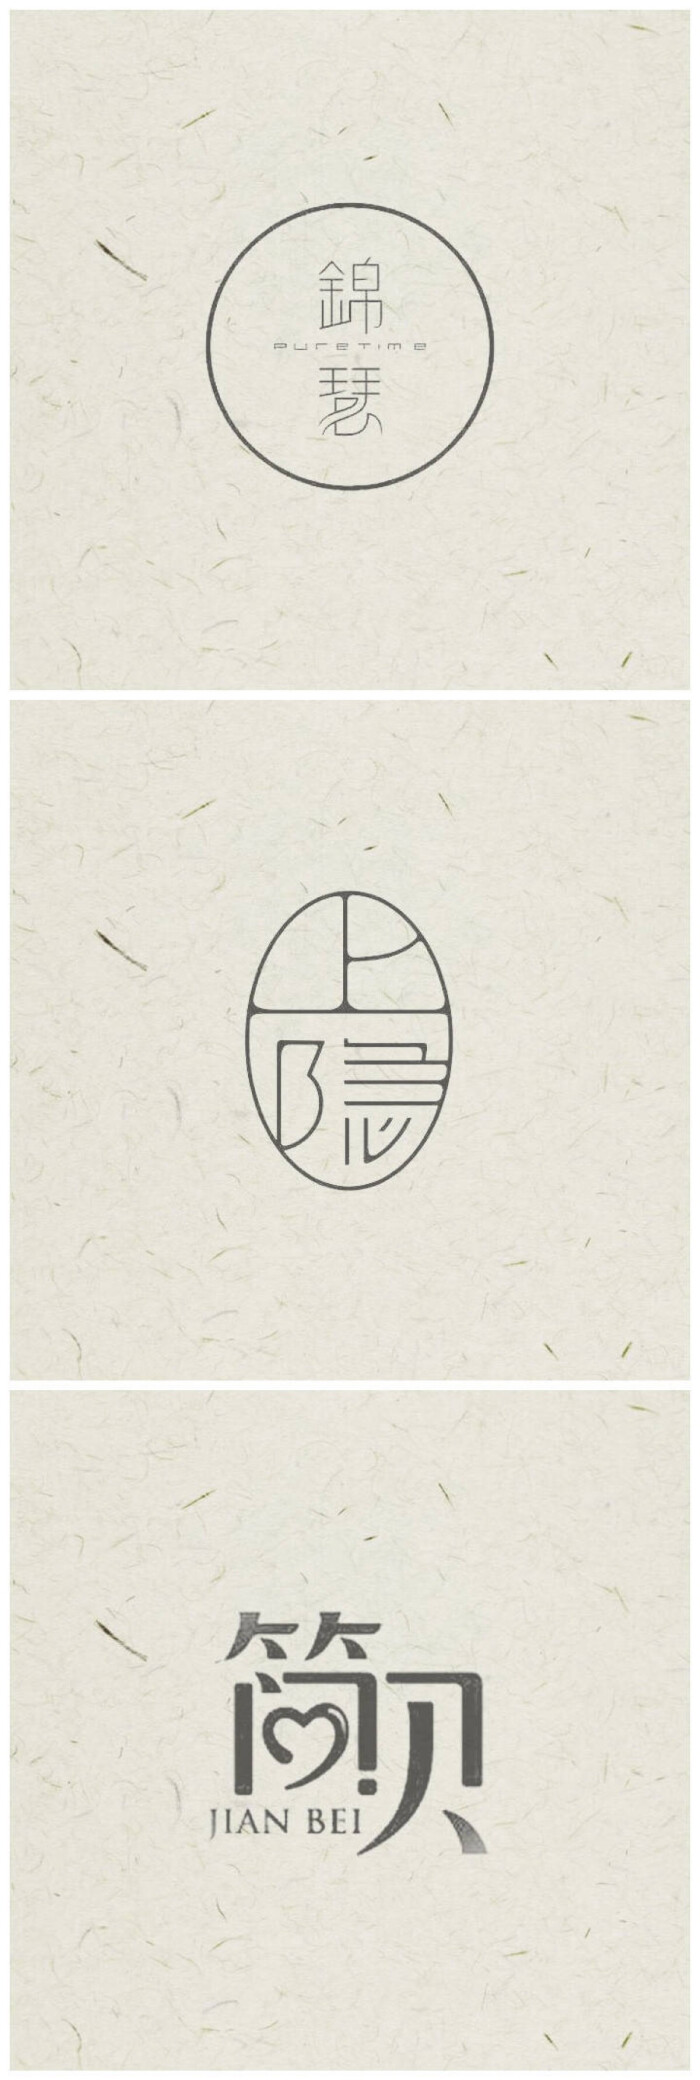 汉字logo 设计